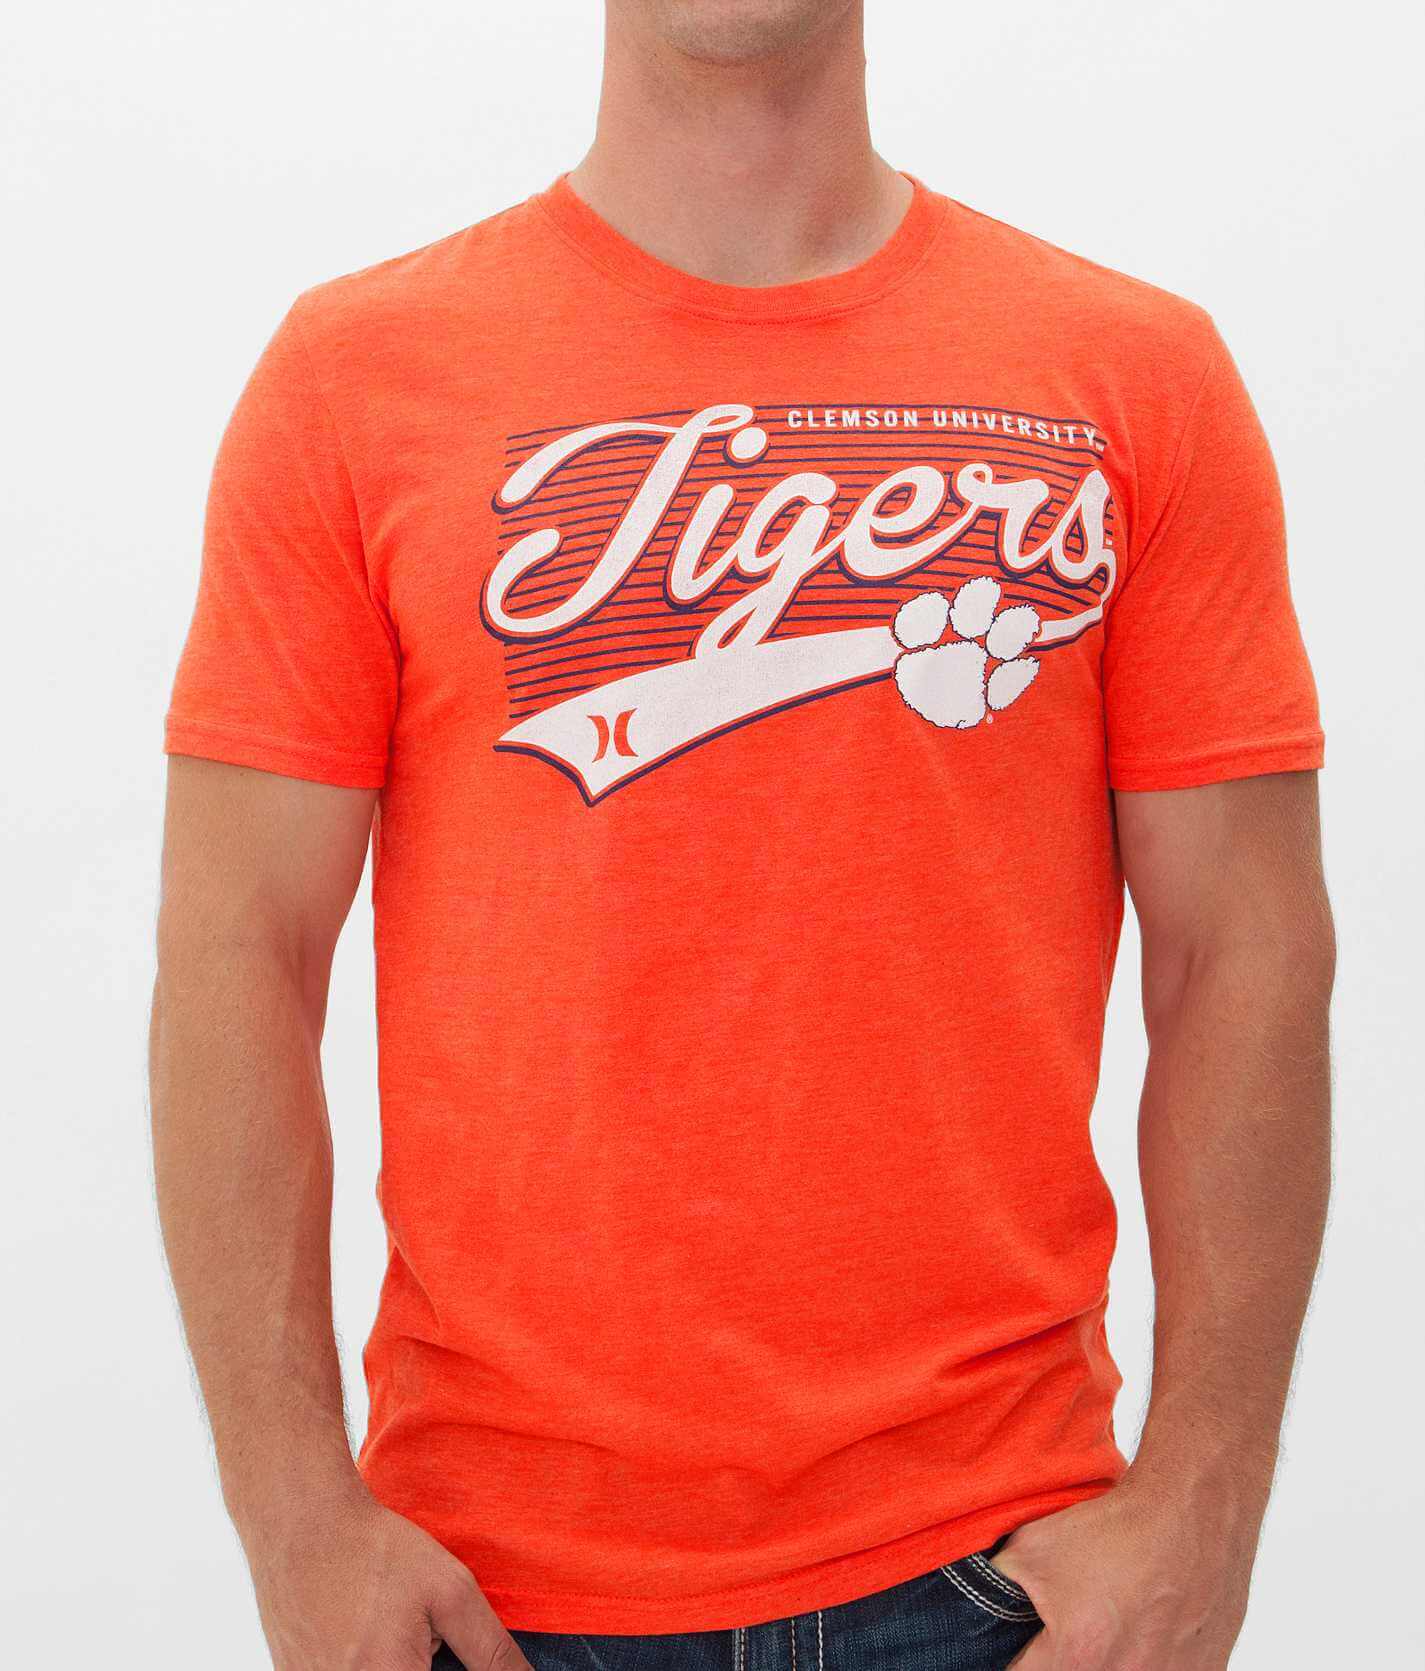 clemson tiger t shirts